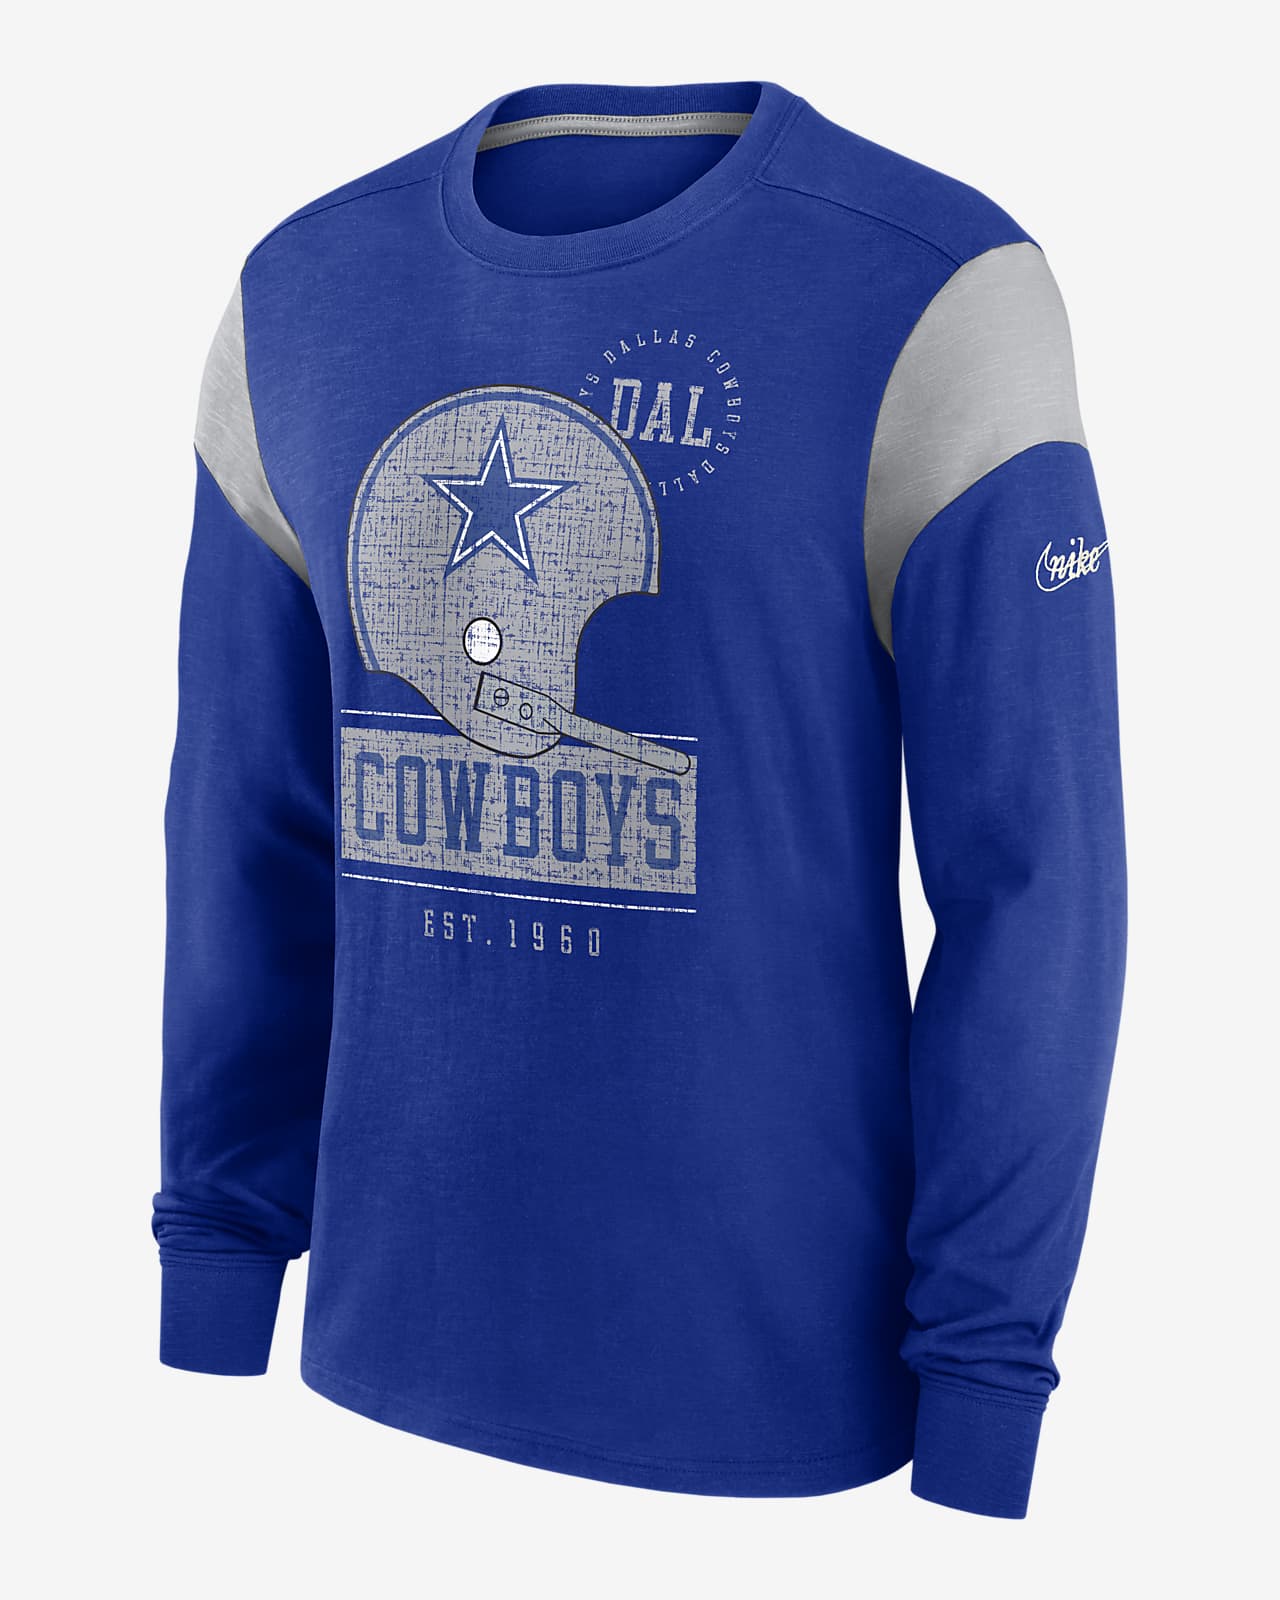 Nike Women's Dallas Cowboys Logo Slub Fashion Top T-shirt